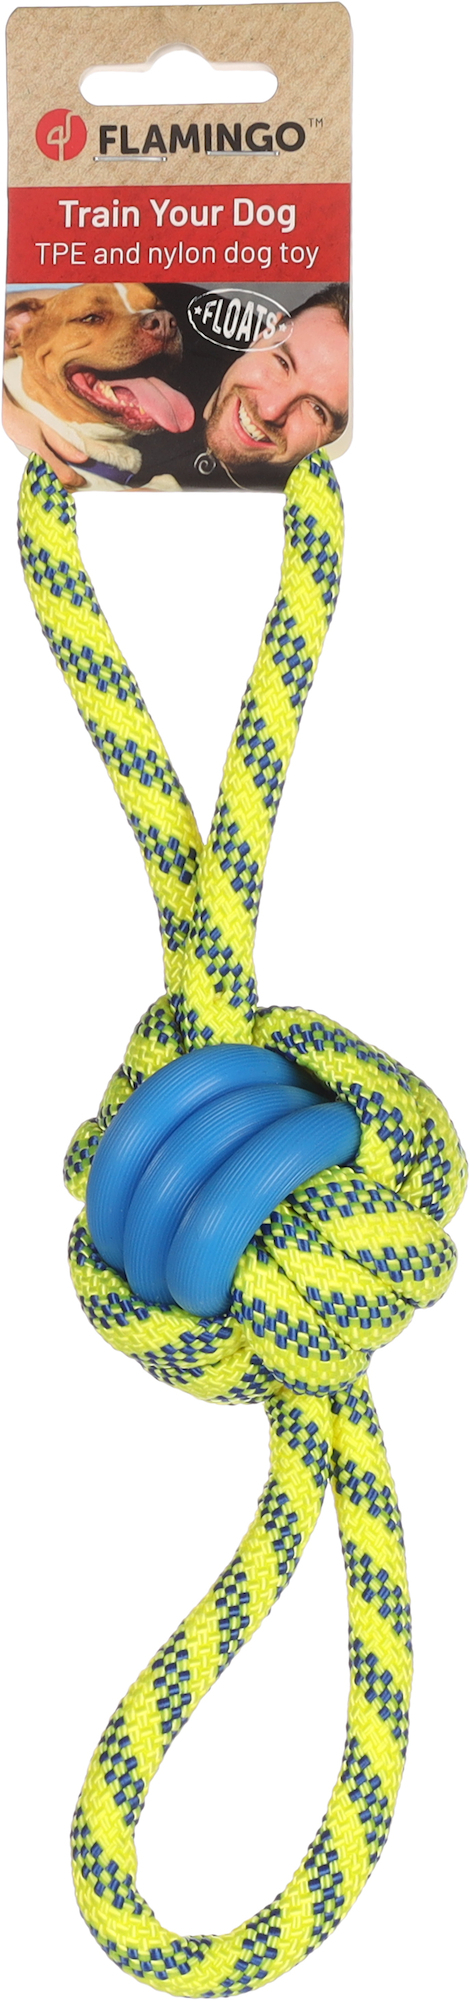 Jouet pour chien Tofla balle nouée bleu/jaune en caoutchouc et nylon résistant